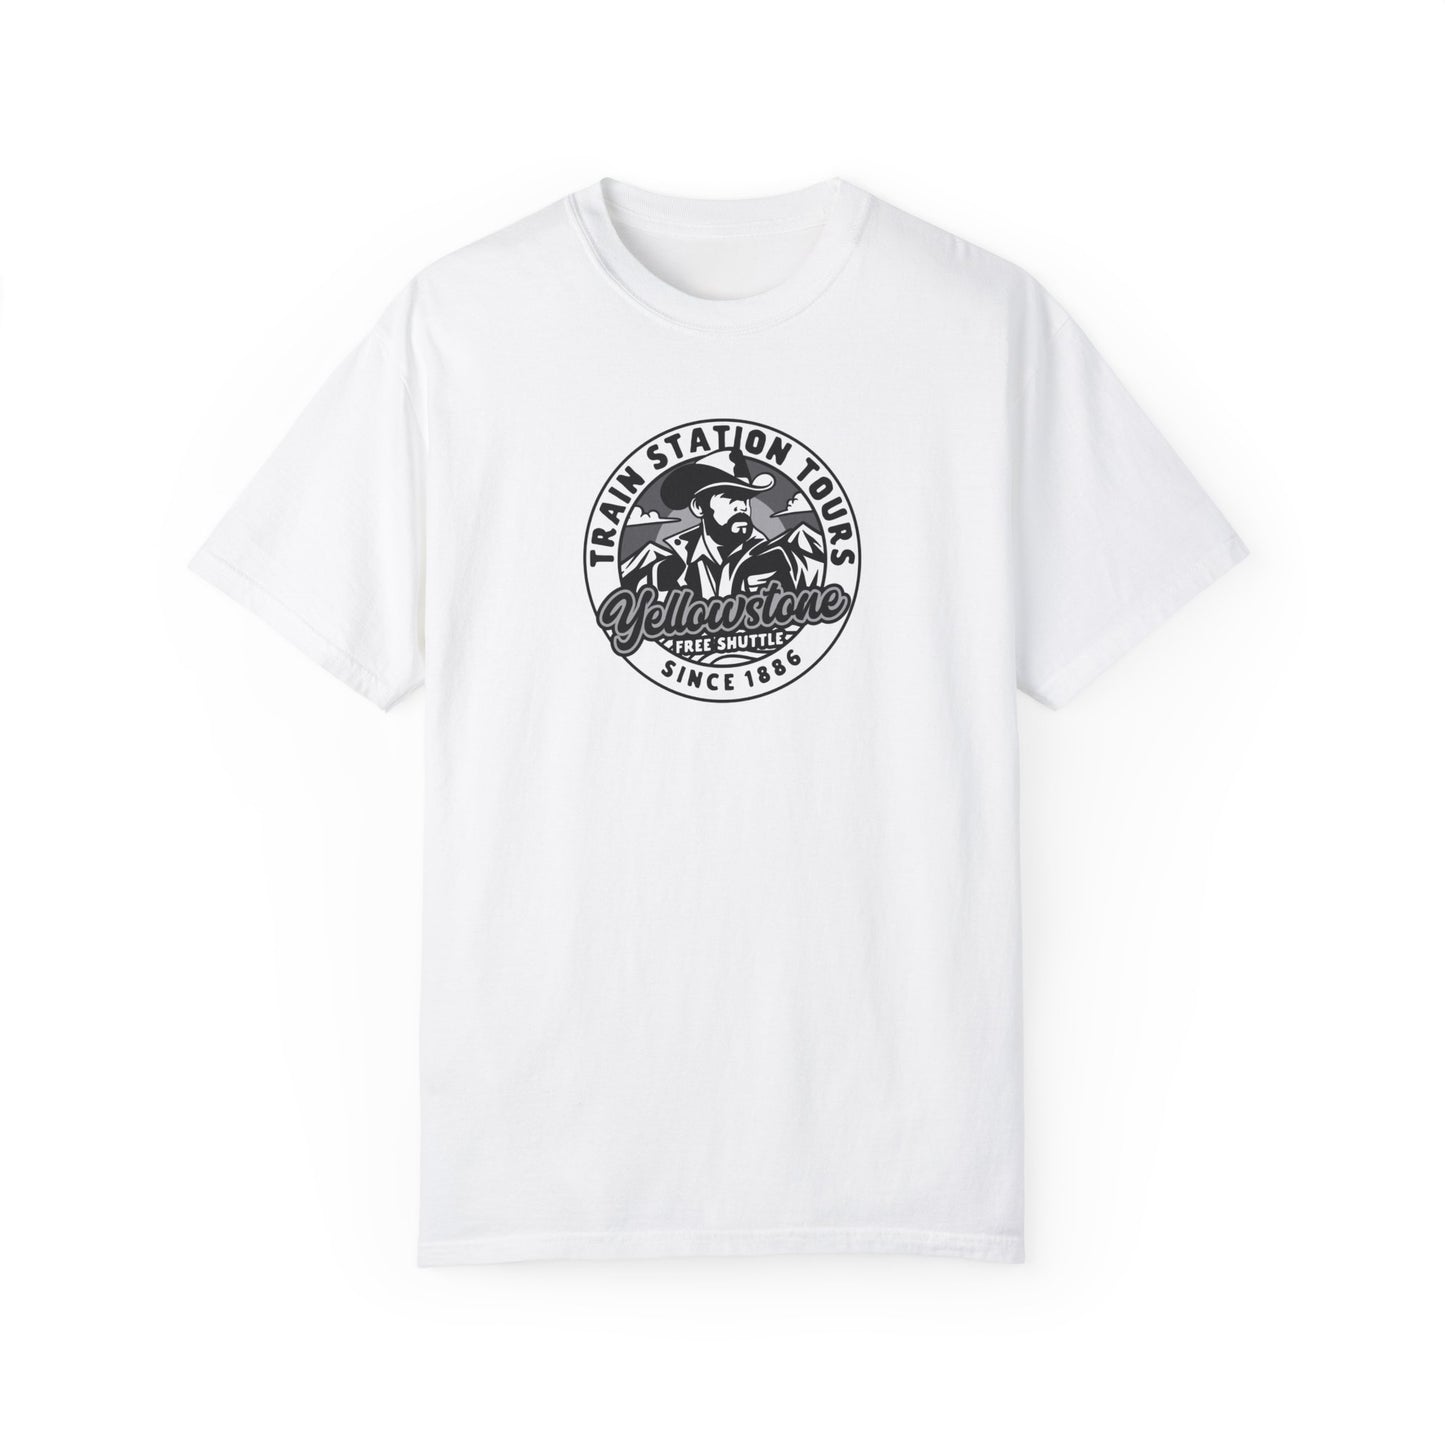 Yellowstone Train Station Tours T-Shirt